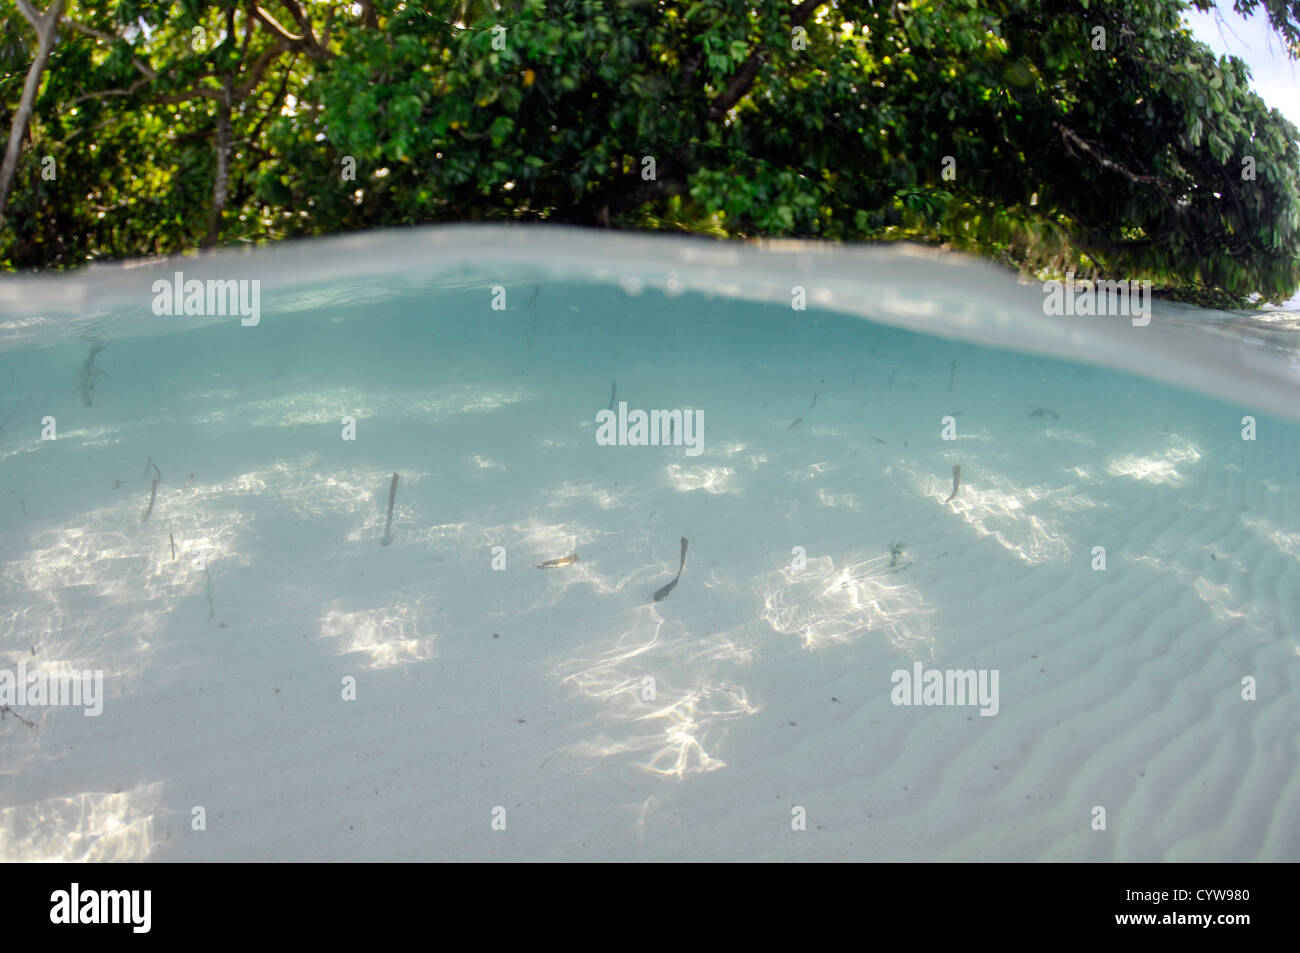 Imagen dividida de manglares y fondo arenoso, Pohnpei, Estados Federados de Micronesia Foto de stock